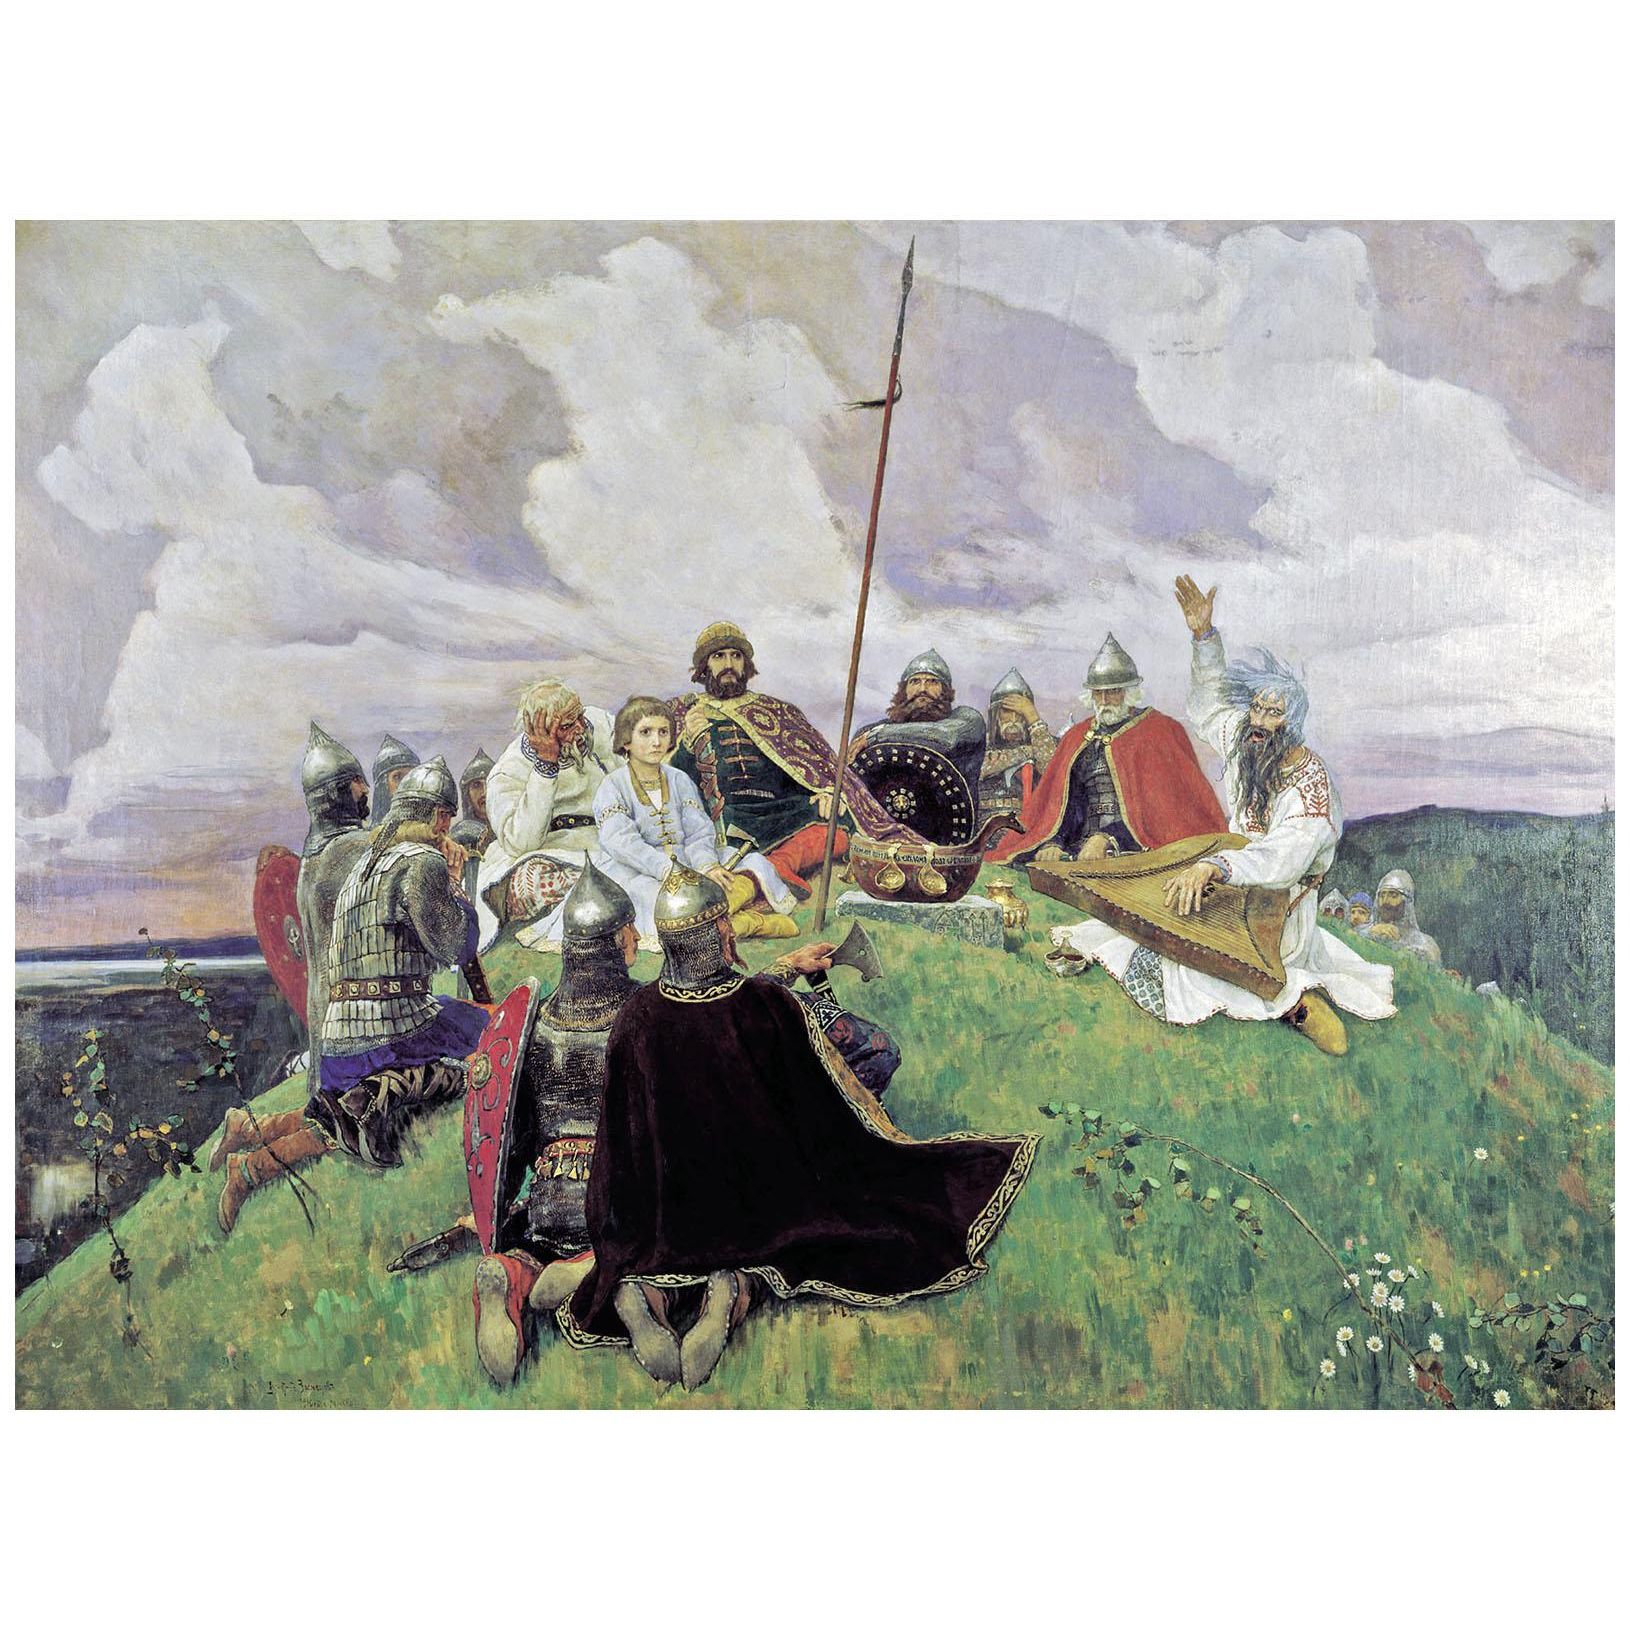 Виктор Васнецов. Баян. 1910. Русский музей